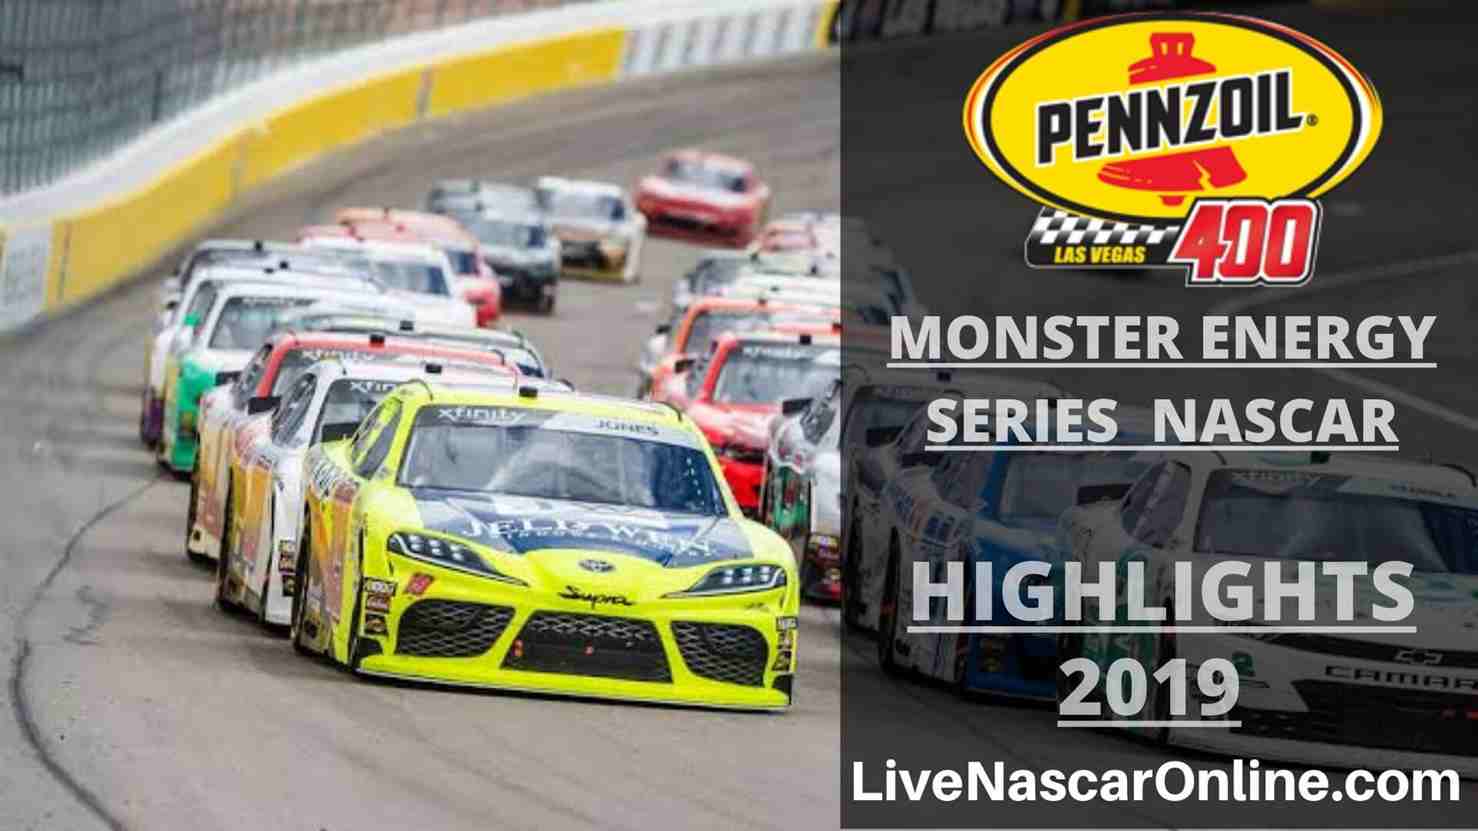 MONSTER ENERGY NASCAR PENNZOIL 400 HIGHLIGHTS 2019